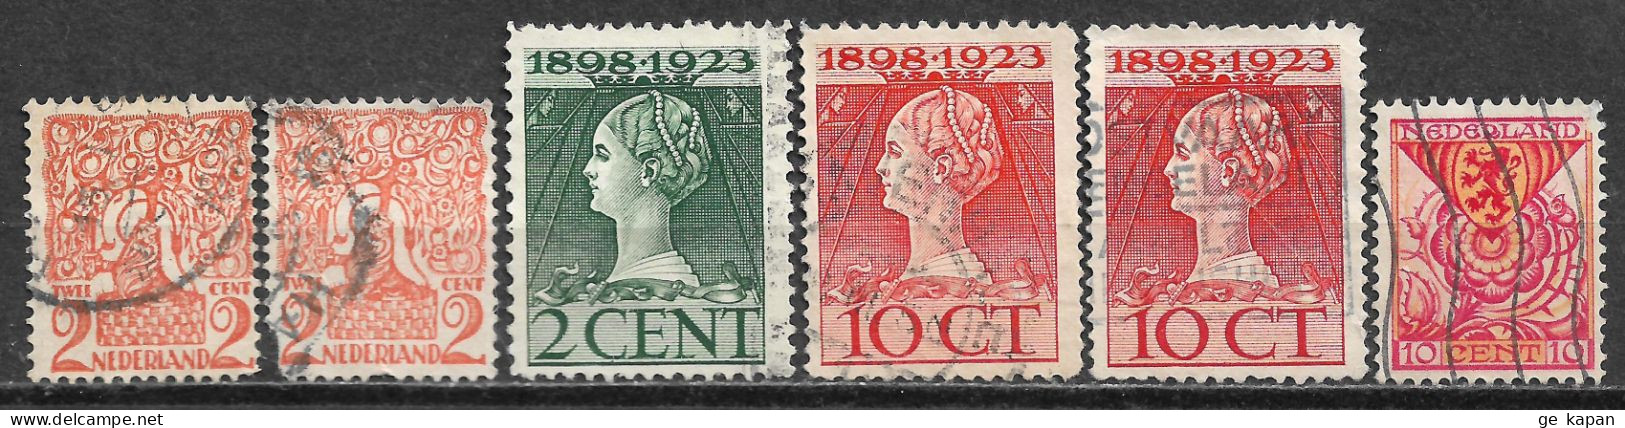 1923-1925 NETHERLANDS SET OF 6 USED STAMPS (Scott # 114,124,127,B11) CV $1.55 - Usados